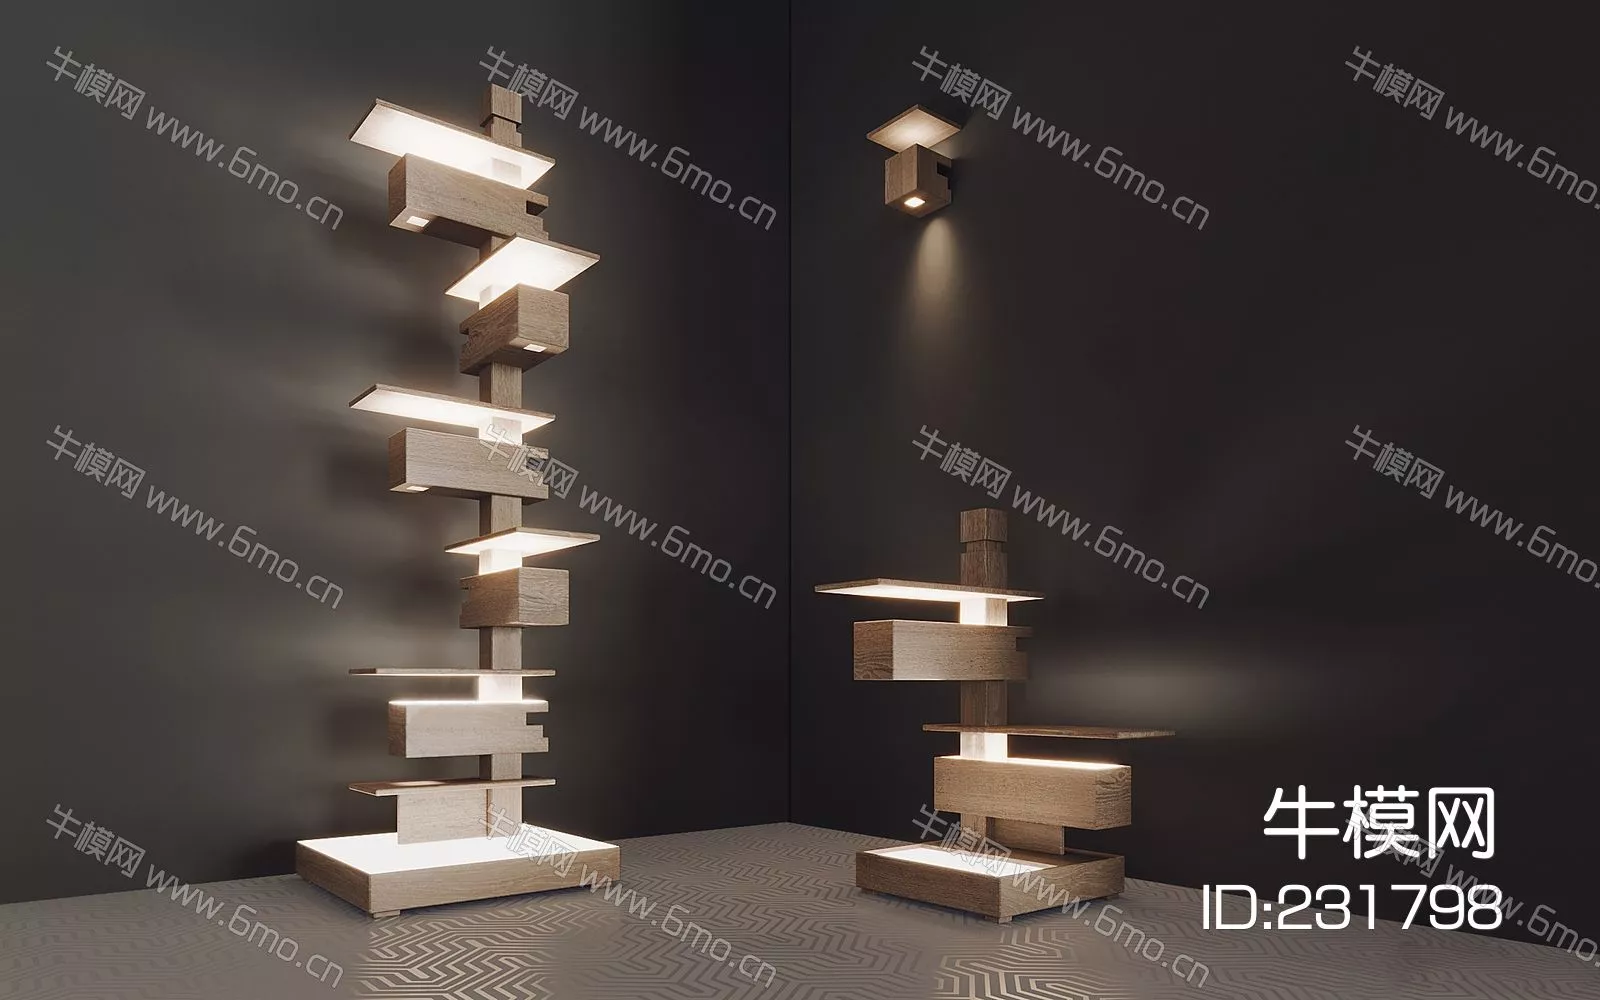 MODERN FLOOR LAMP - SKETCHUP 3D MODEL - ENSCAPE - 231798